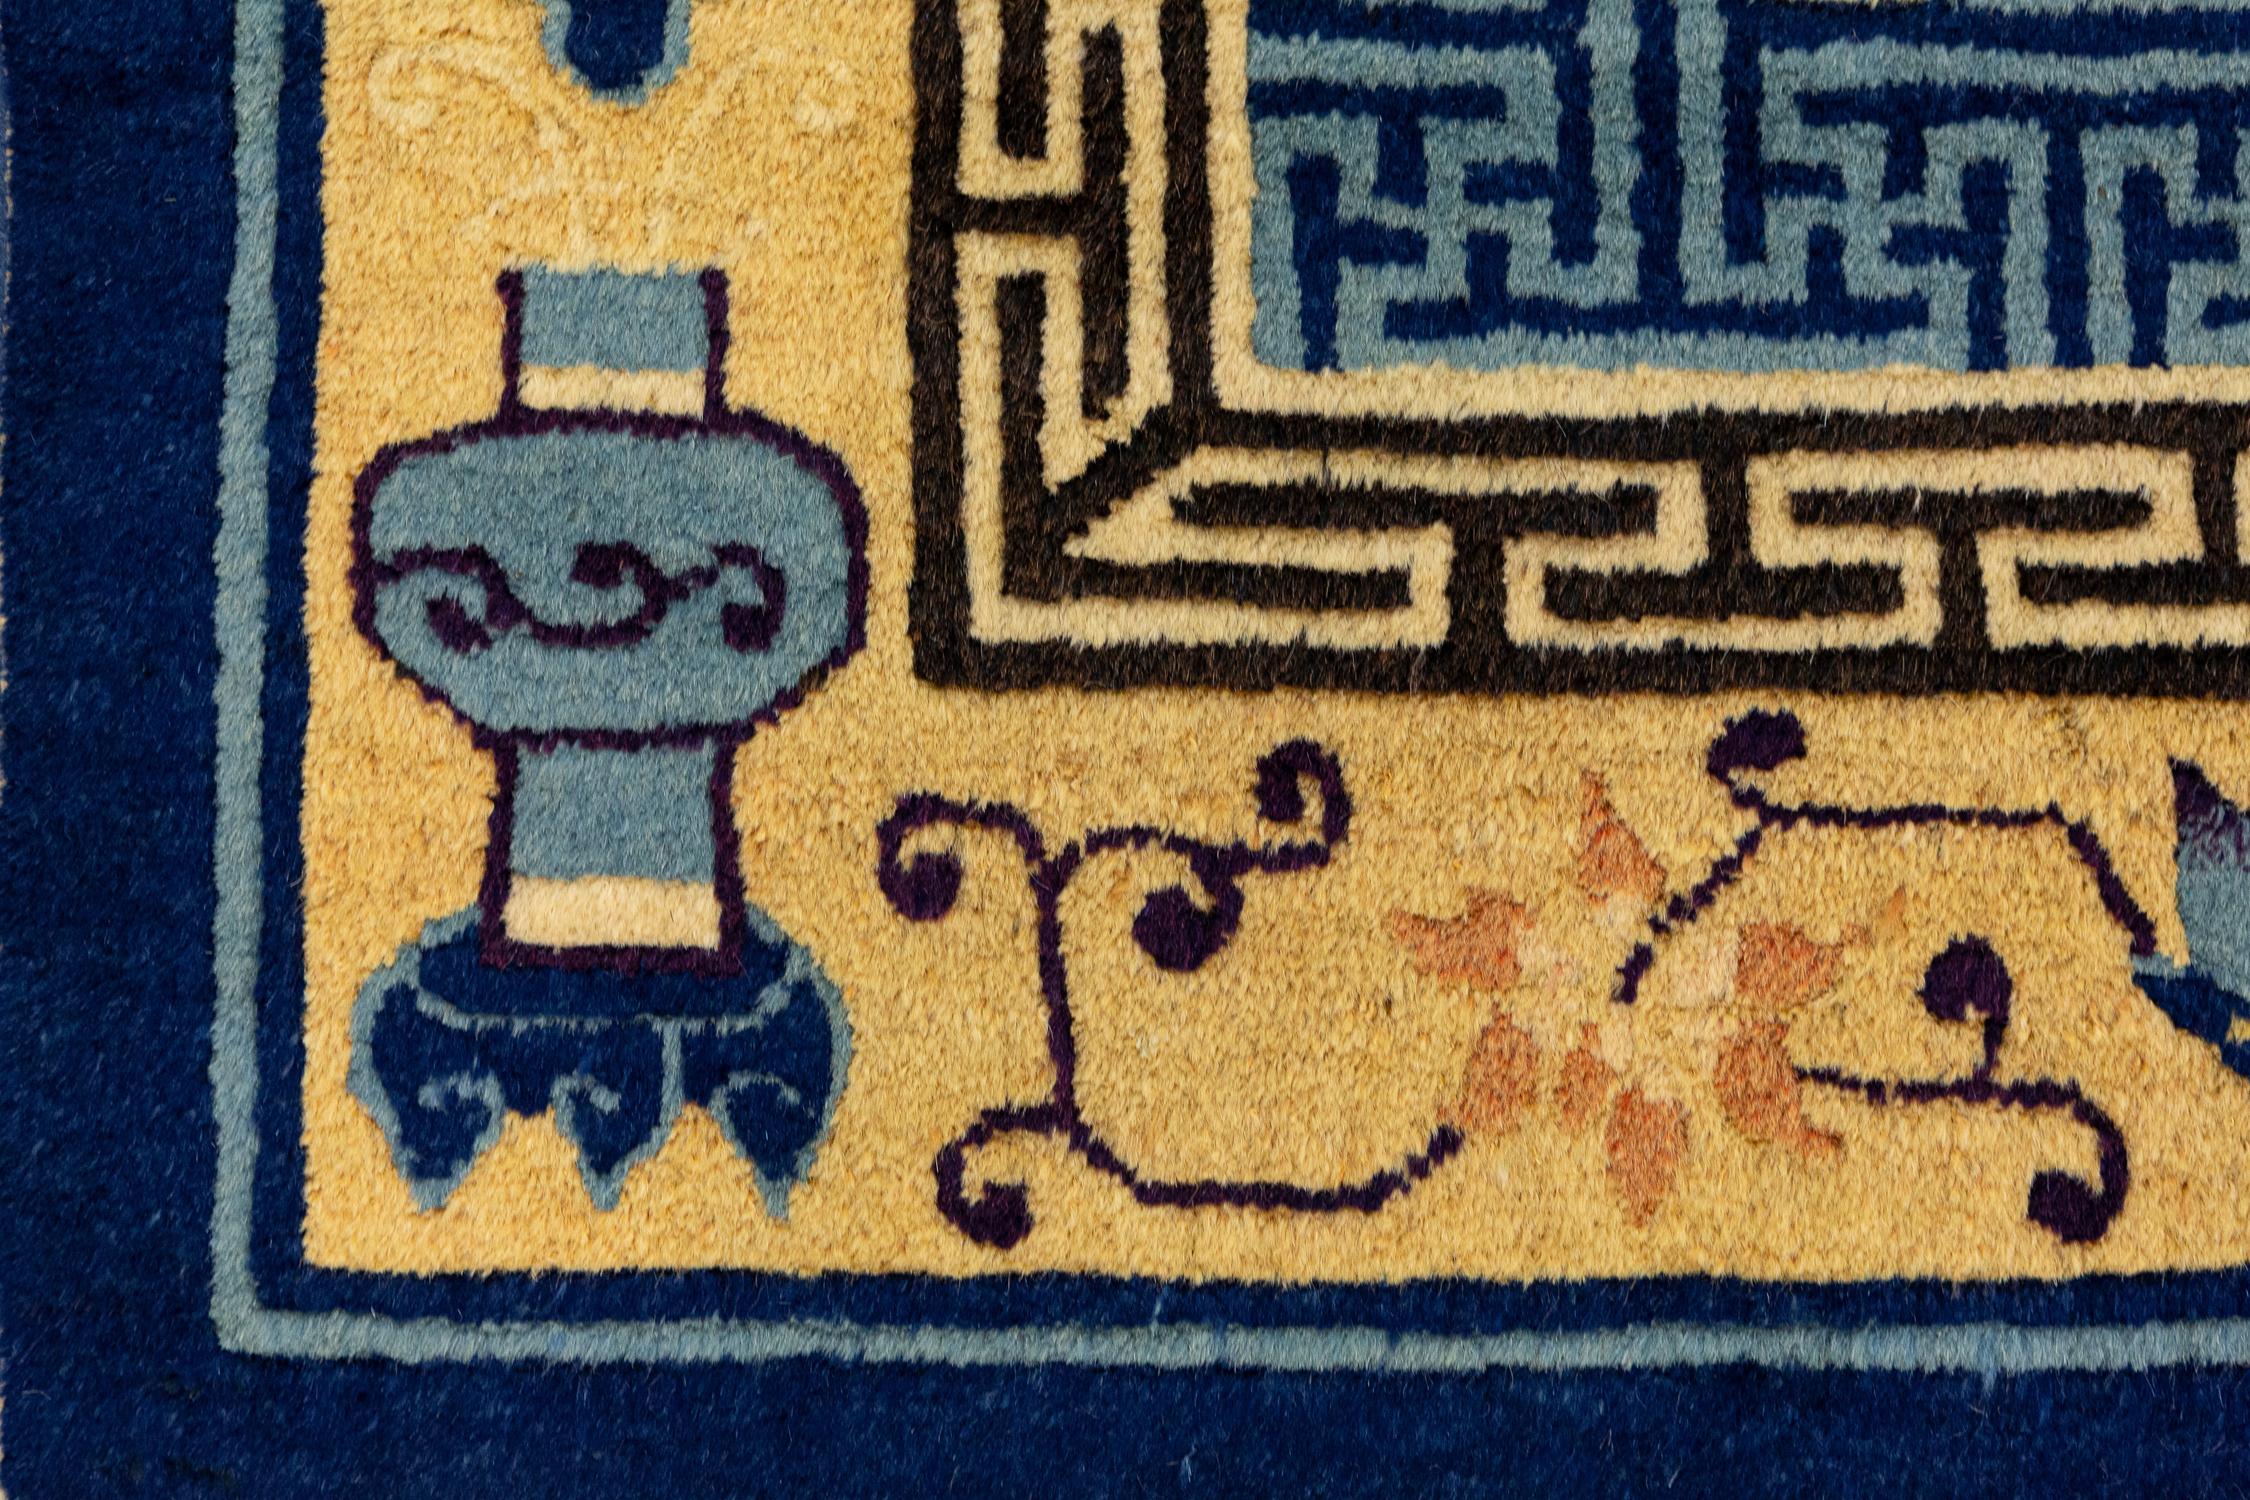 Il s'agit d'un tapis à picots tissé en Chine au cours du XIXe siècle. Il mesure 177 x 90 cm. Sa bordure est composée de différents motifs traditionnels chinois tels que des fleurs, des poteries et des fruits, le tout sur un fond jaune qui crée un